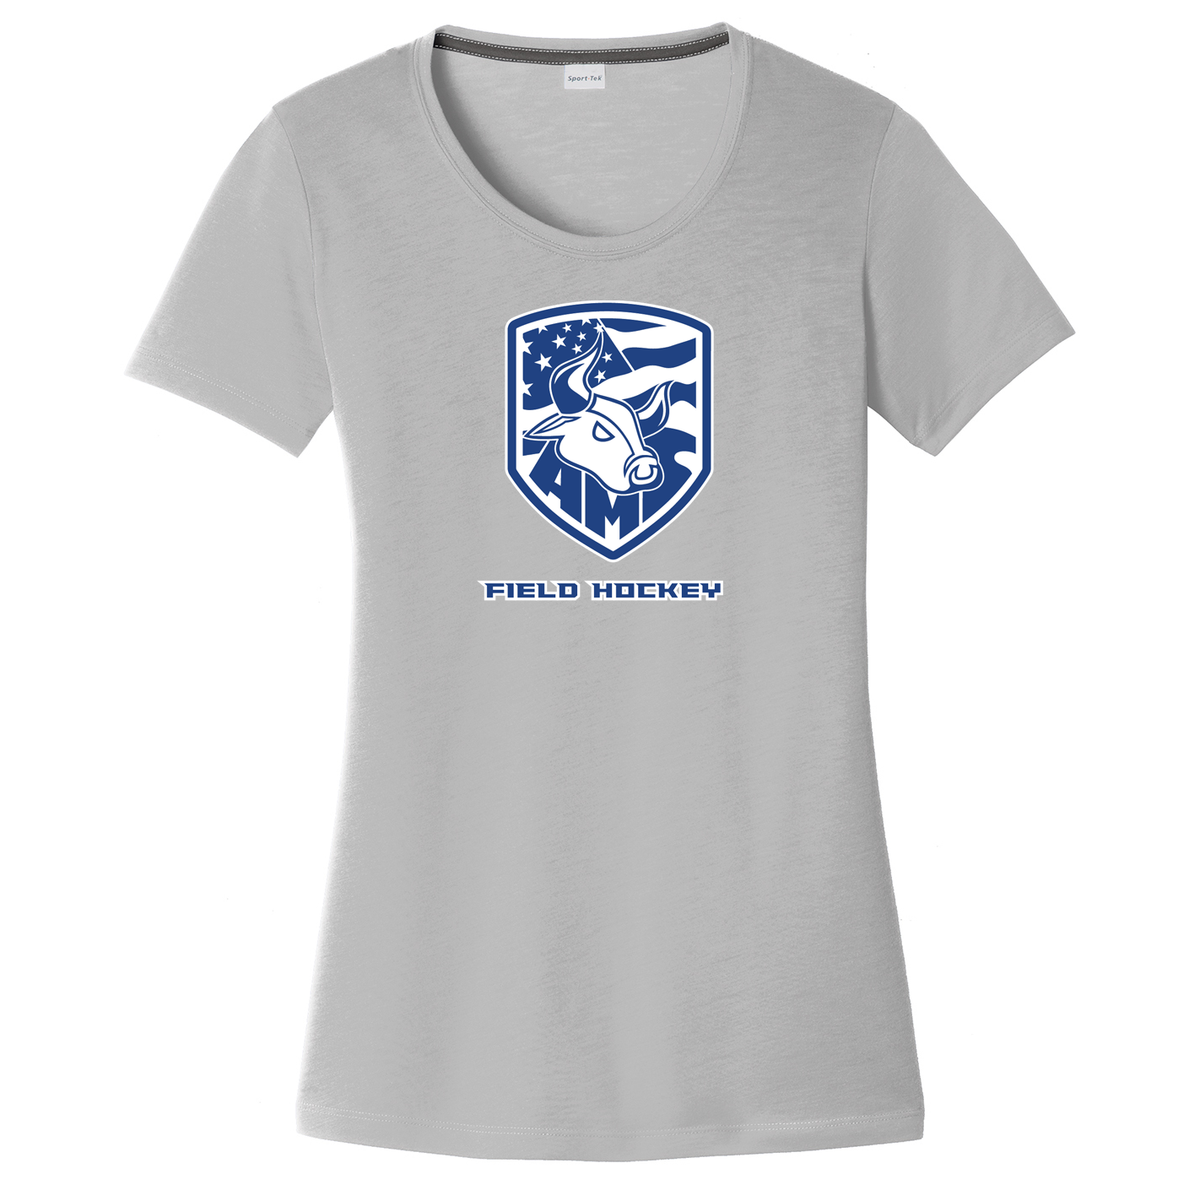 Accompsett Field Hockey  Women's CottonTouch Performance T-Shirt